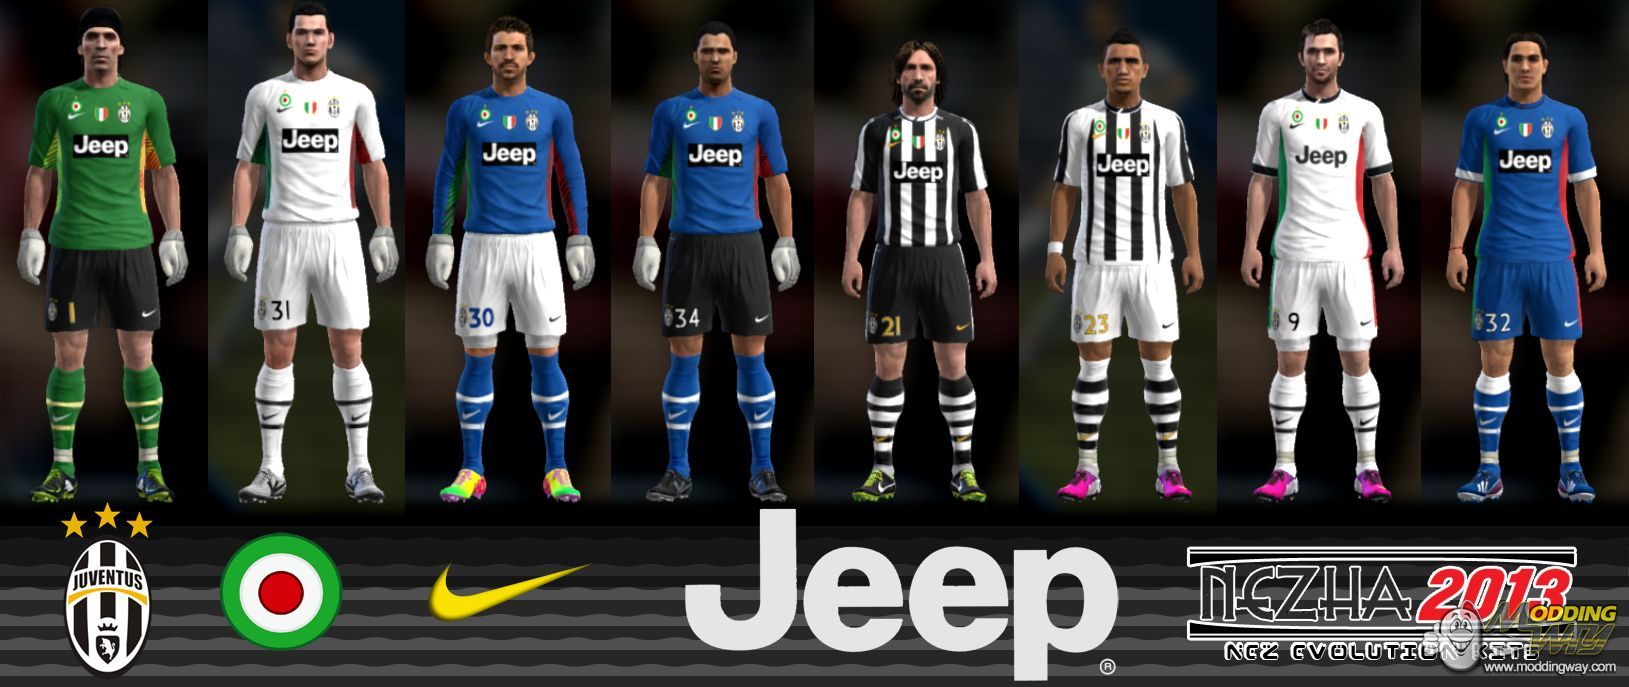 Juventus Fantasy Pro Evolution Soccer 2013 At Moddingway